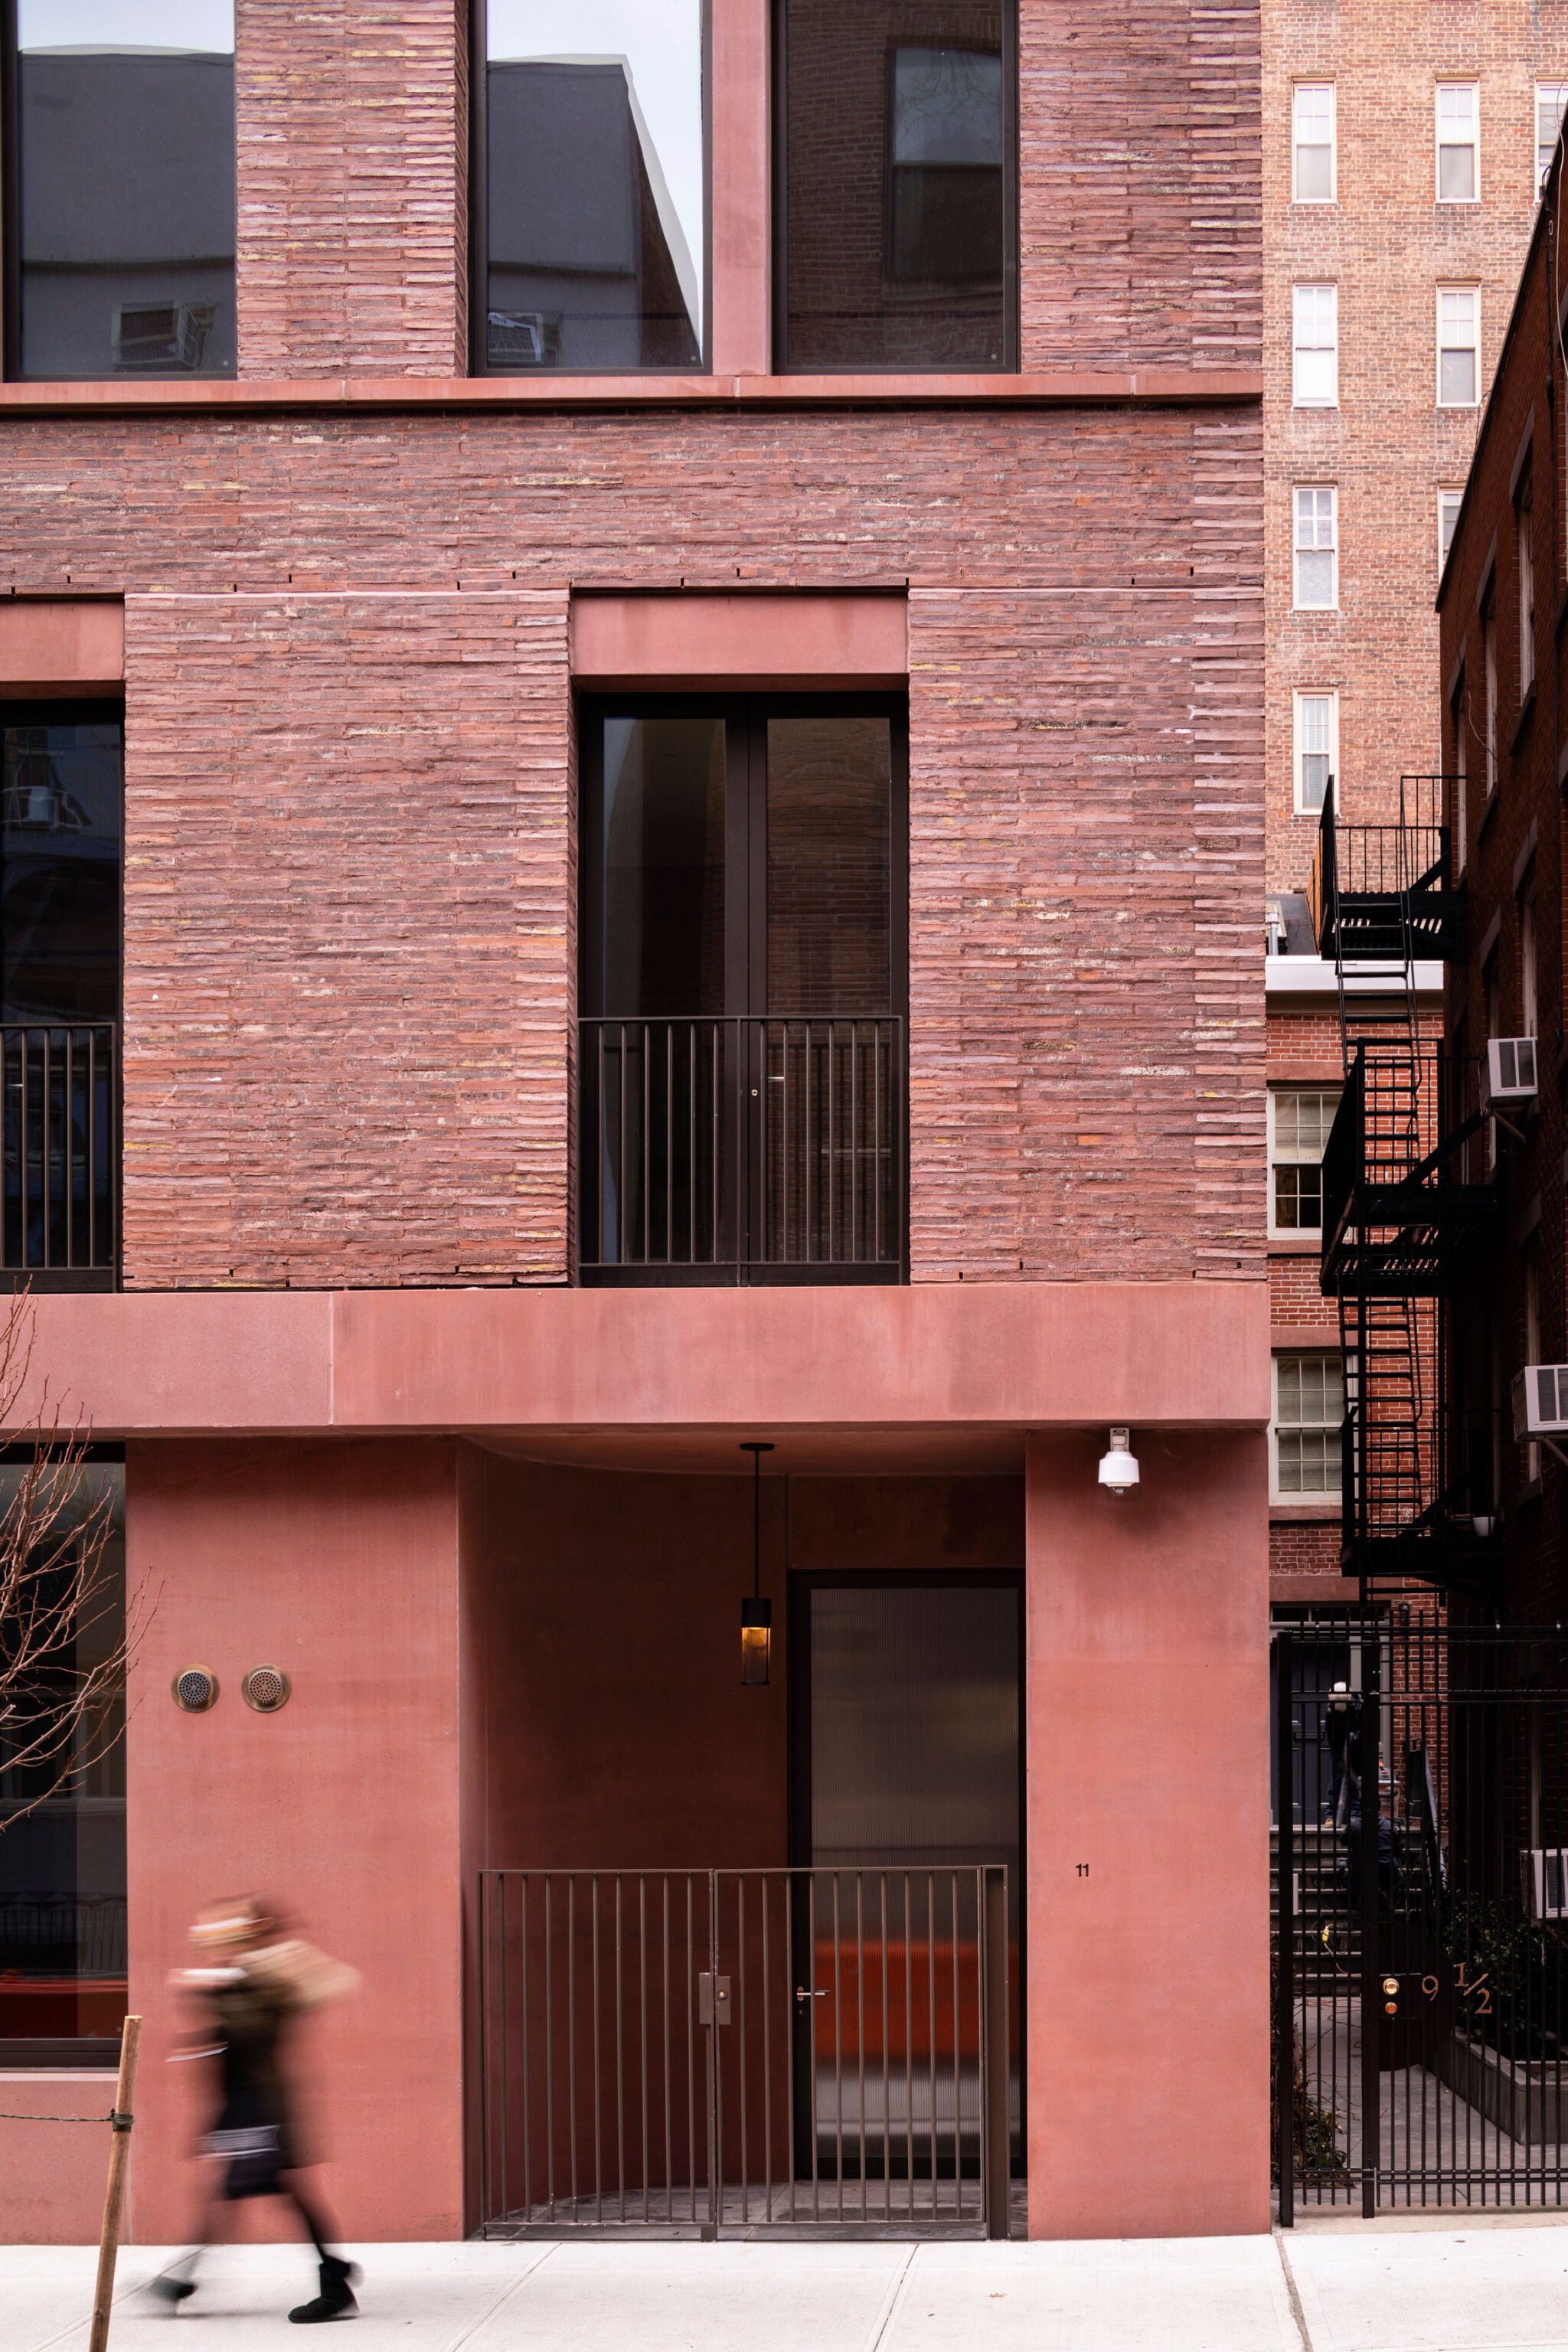 デイビッド チッパーフィールド アーキテクツによる アメリカ ニューヨークの集合住宅 11 19 Jane Street 周辺環境のコンテクストや内部の住戸タイプとも関連する繊細なデザインのファサードが特徴 Architecturephoto Net